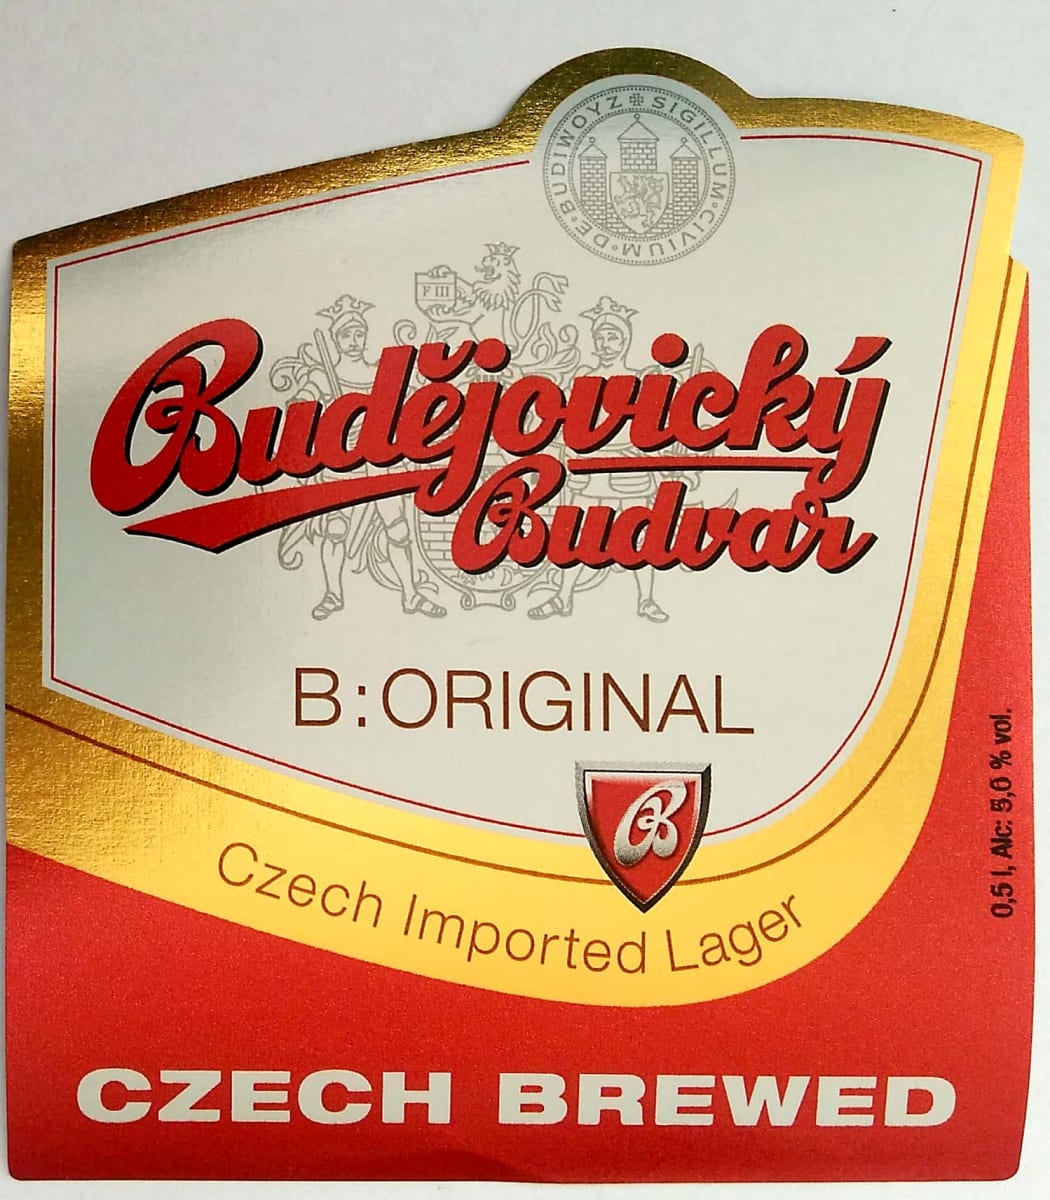 Budějovický Budvar B ORIGINAL Czech Imported Lager 0,5l Czech brewed Etk. A